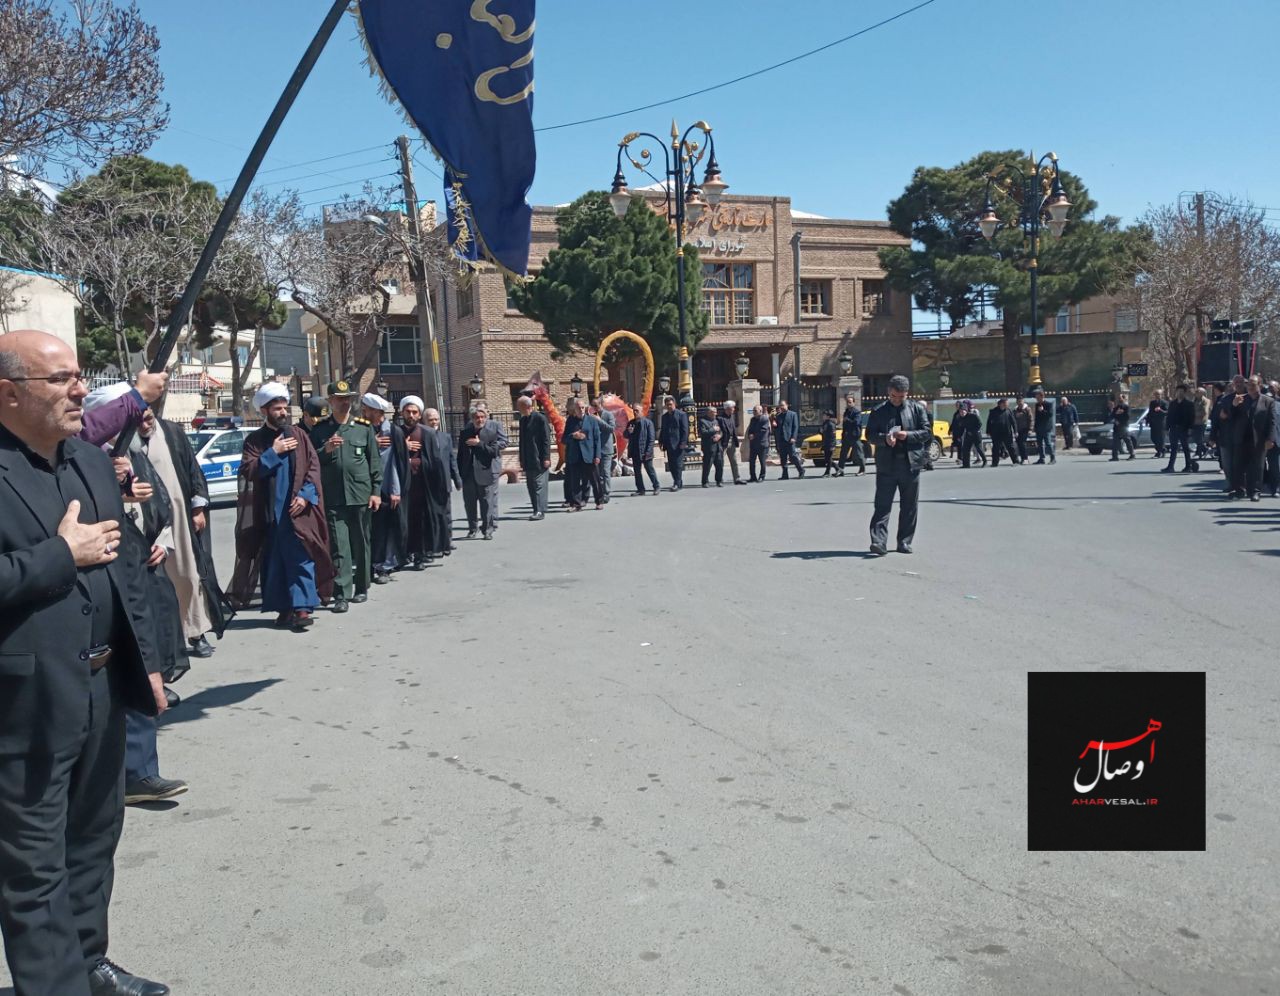 گزارش تصویری از: مراسم عزاداری خیابانی هیئت های حسینی و مذهبی در سوگ امام اول شیعیان در اهر